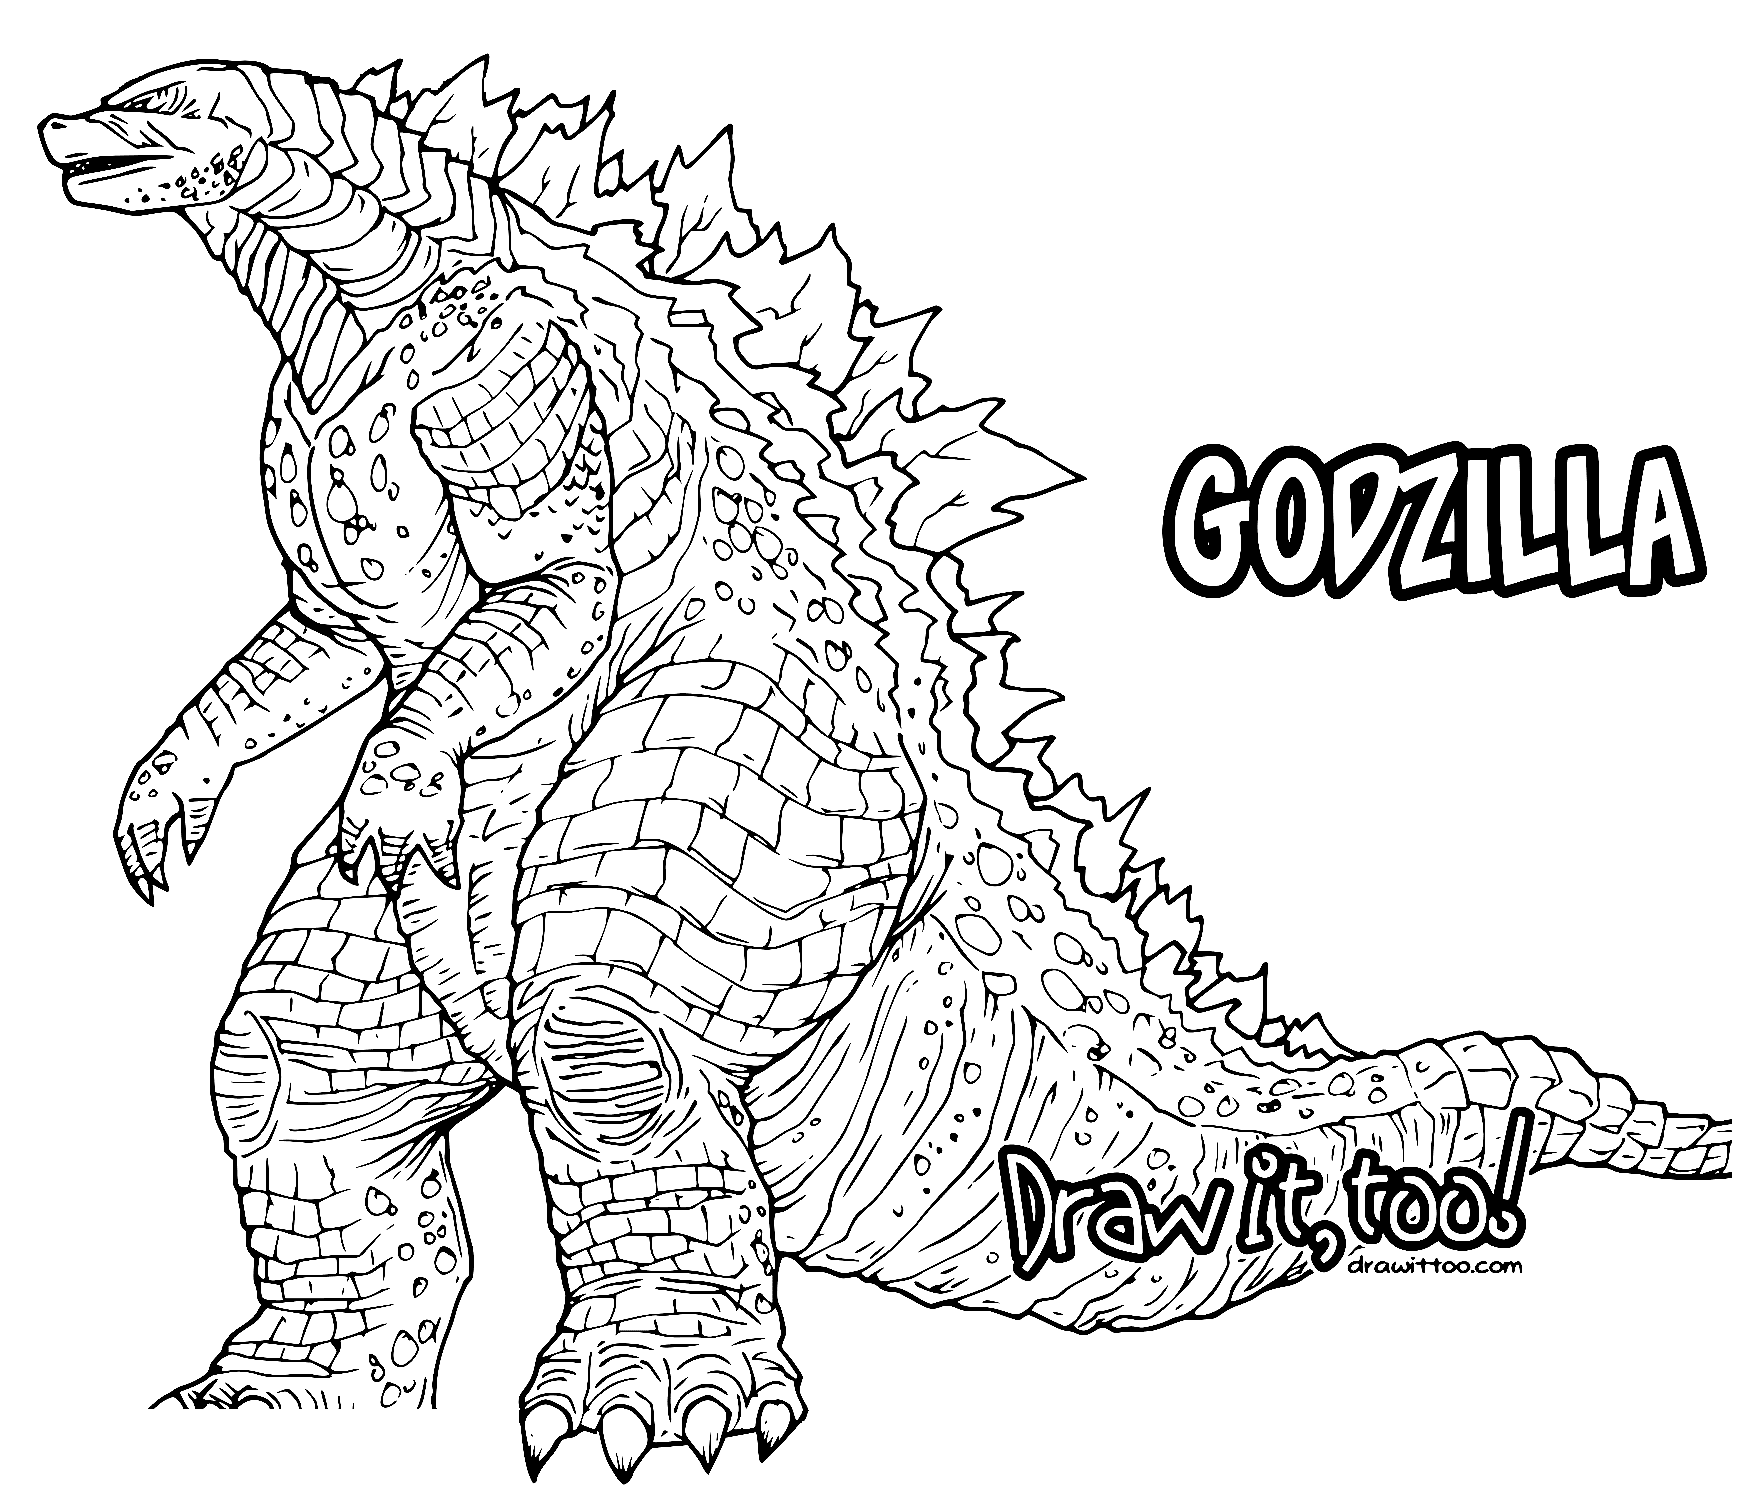 Godzilla un'enorme pagina da colorare distruttiva